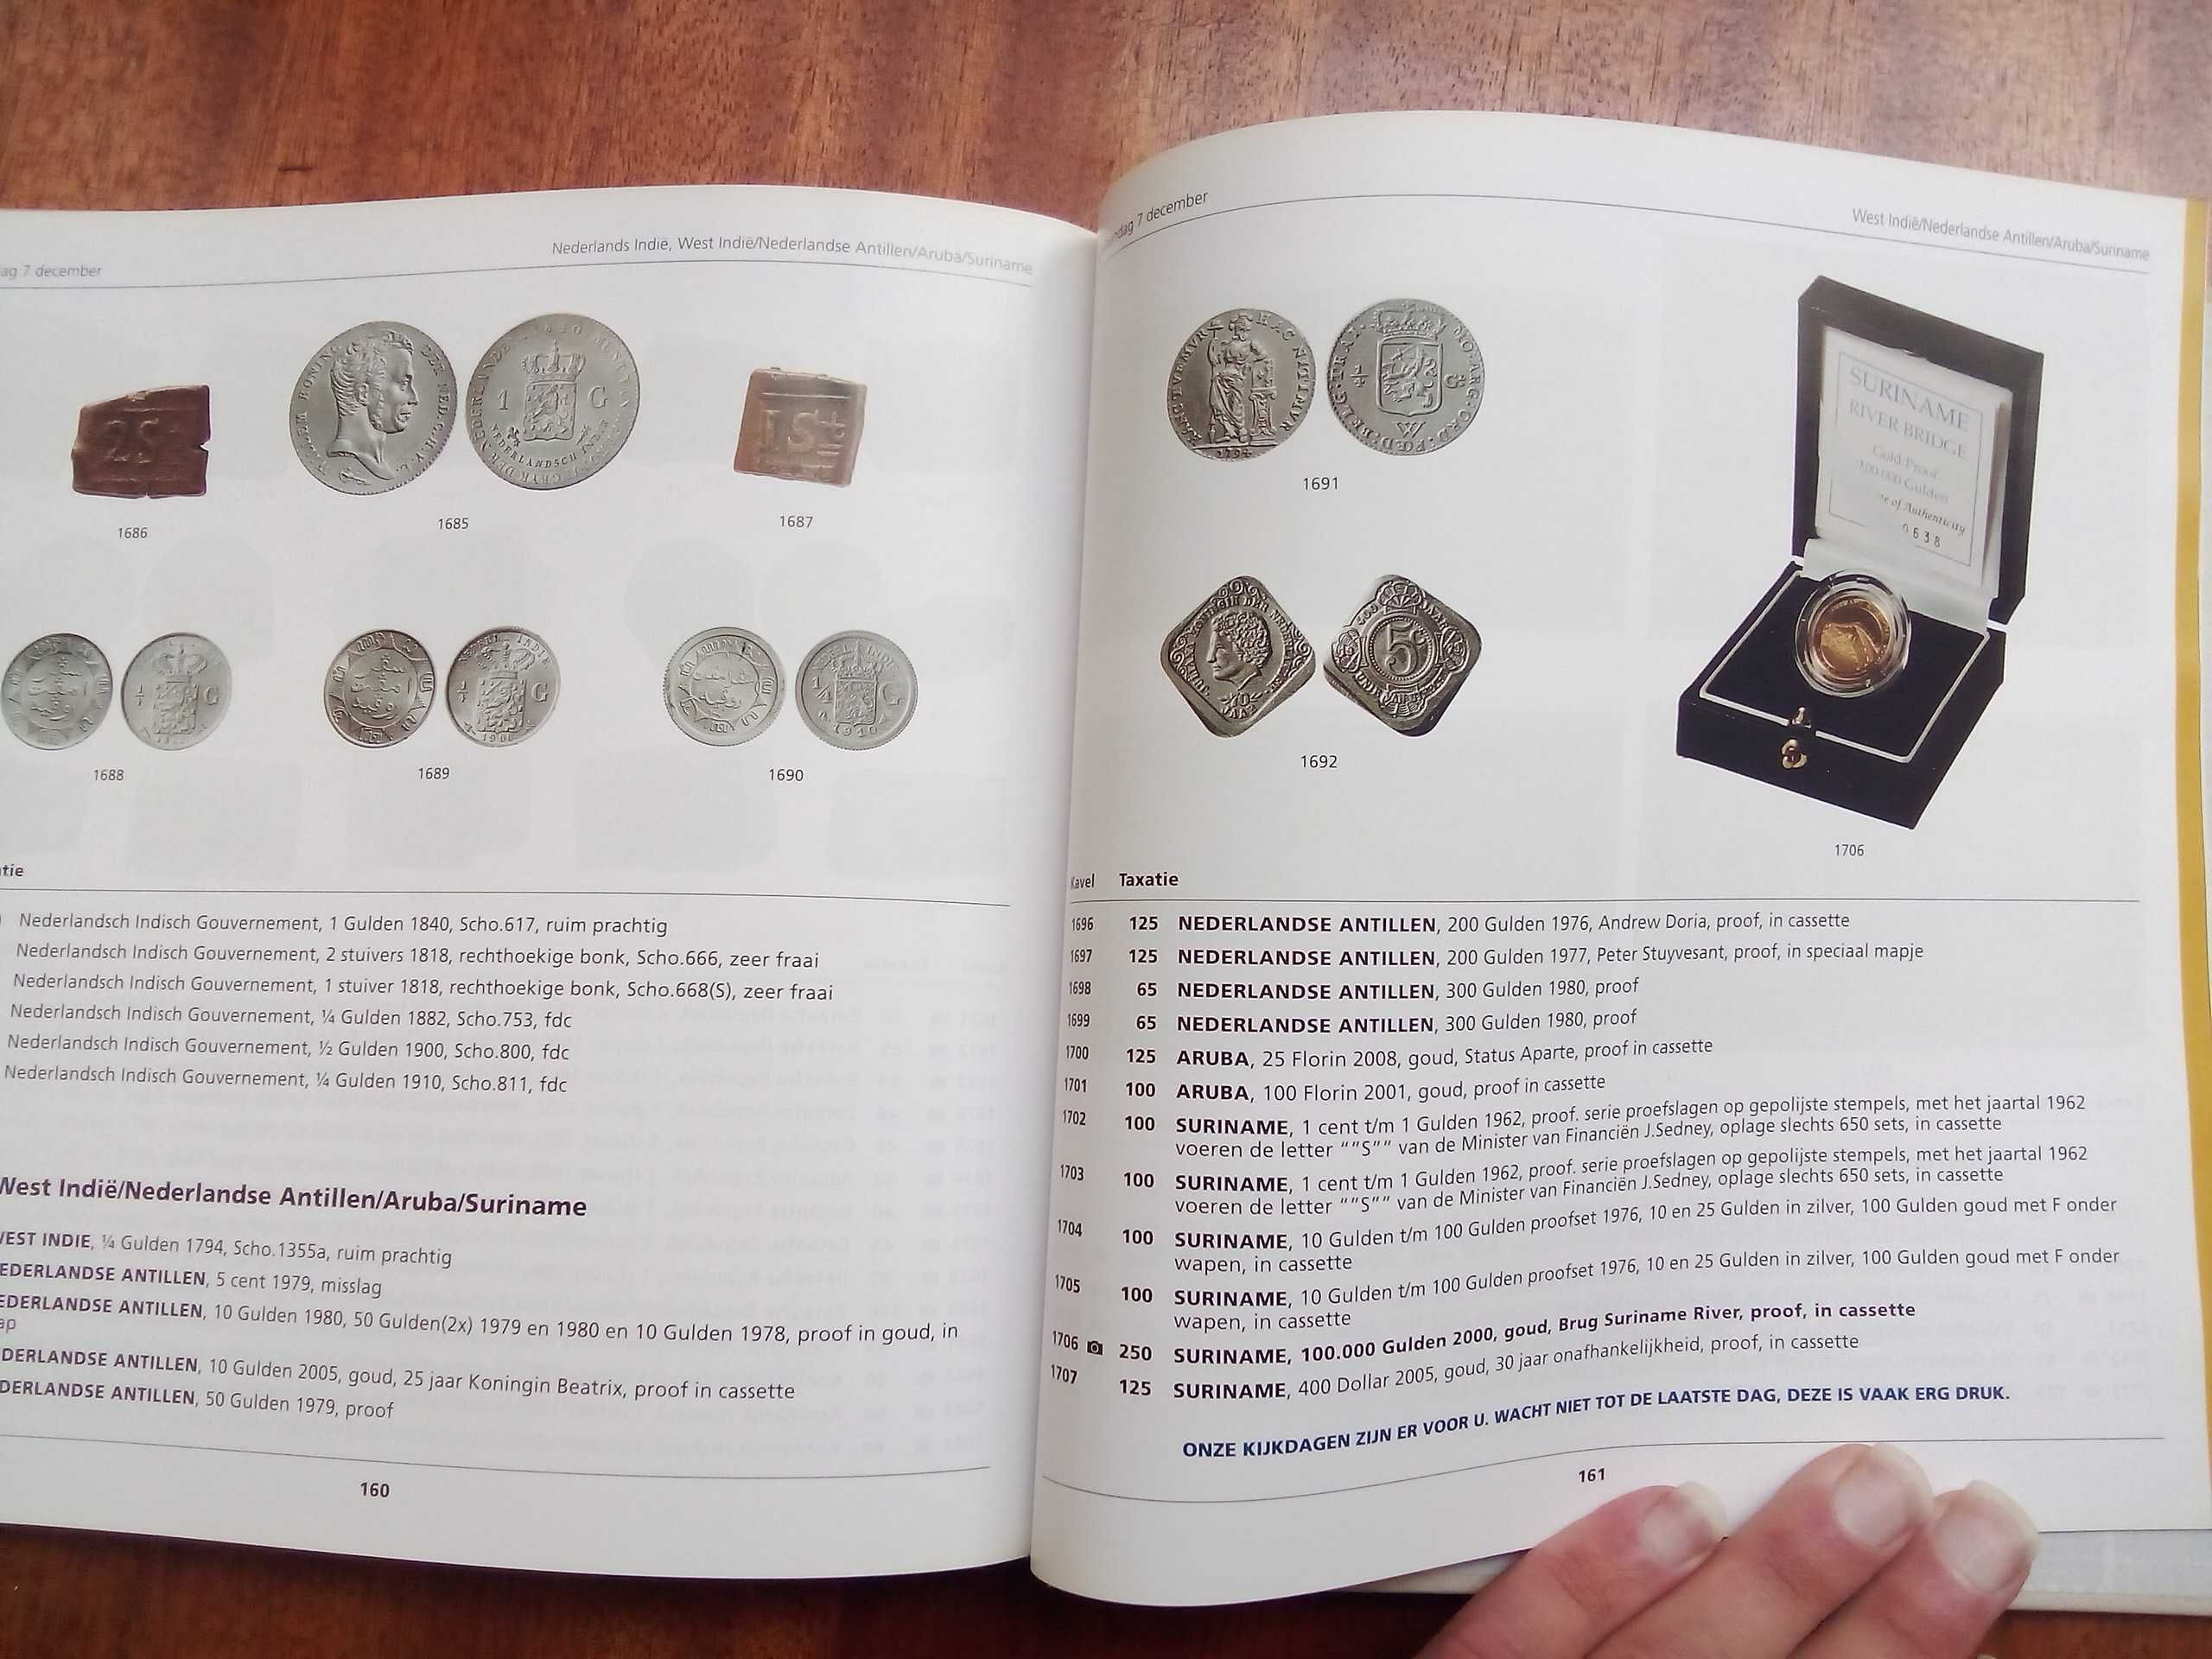 Холандски търгове на монети. Енциклопедия.